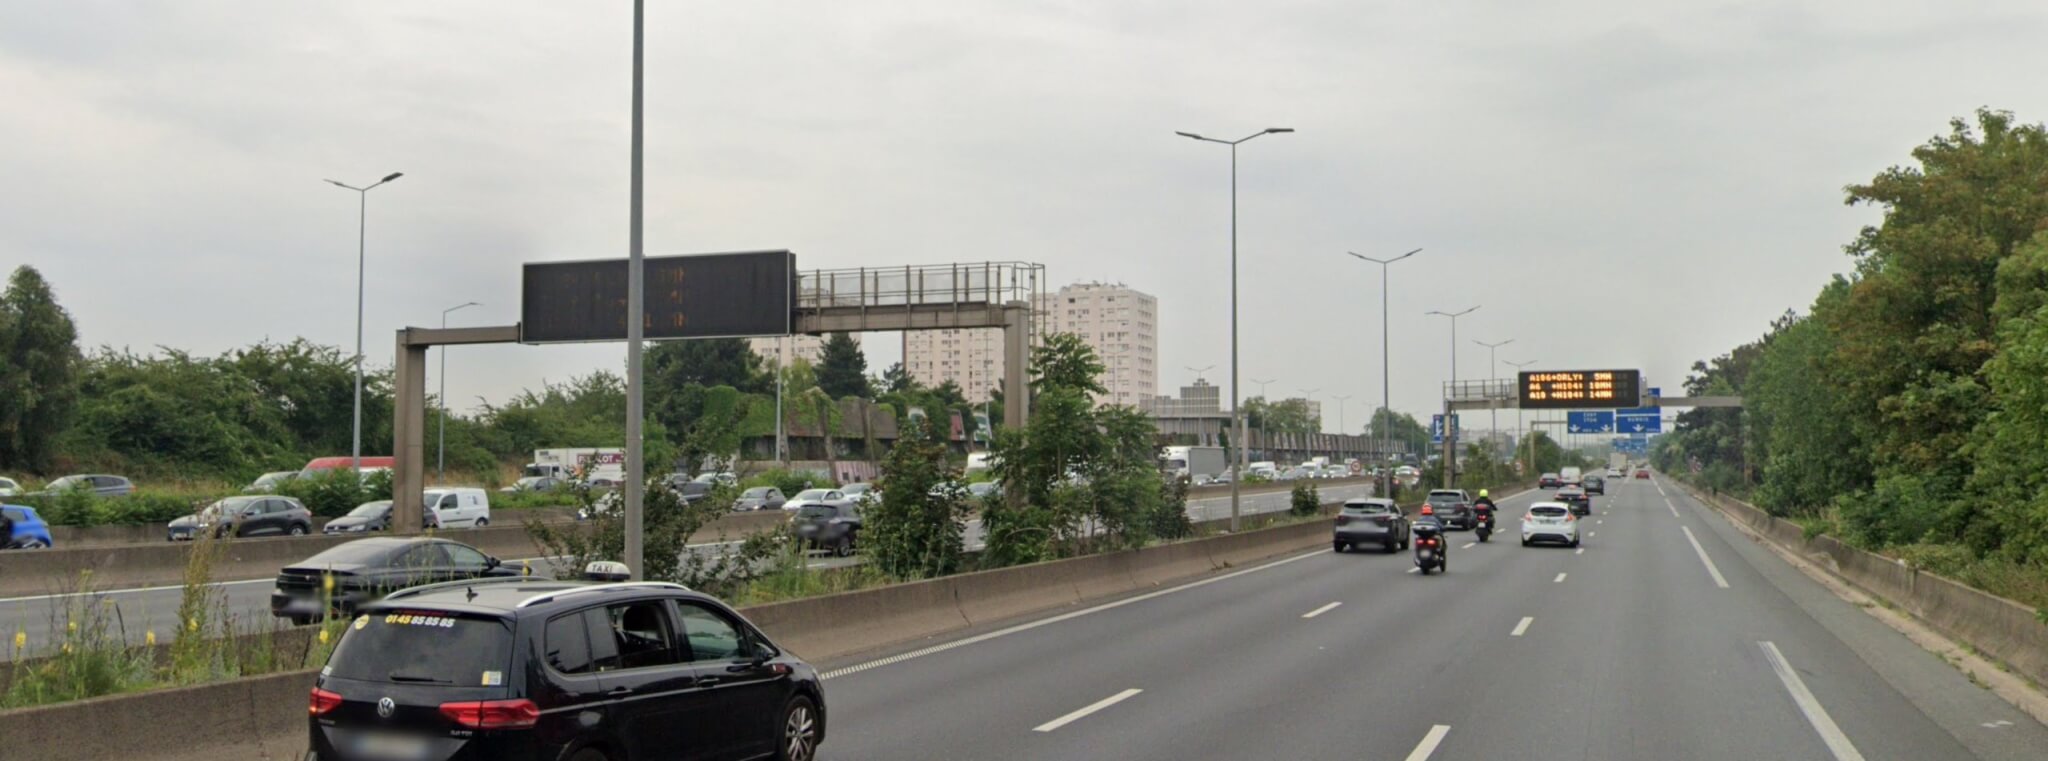 L’autoroute A6b fermée entre Paris et L’Haÿ-les-Roses après un incendie de tunnel